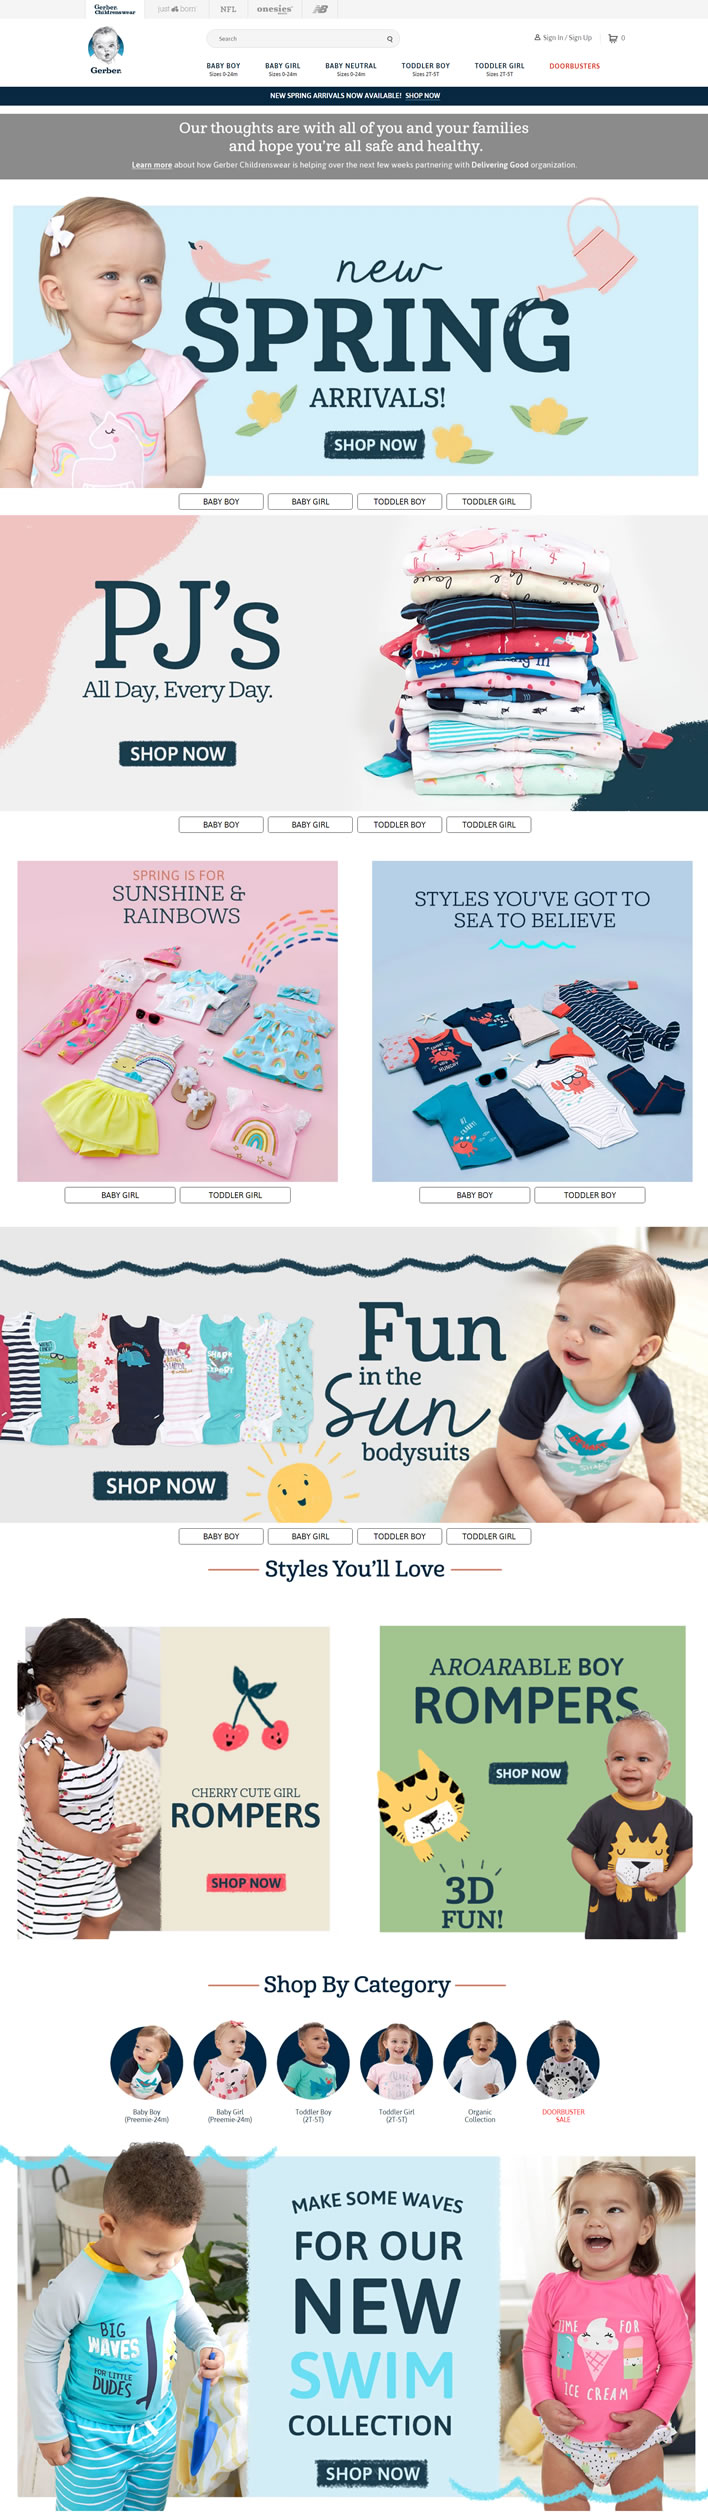 美國嬰兒服裝購物網站：Gerber Childrenswear 美國購物網站 MeetKK-MeetKK